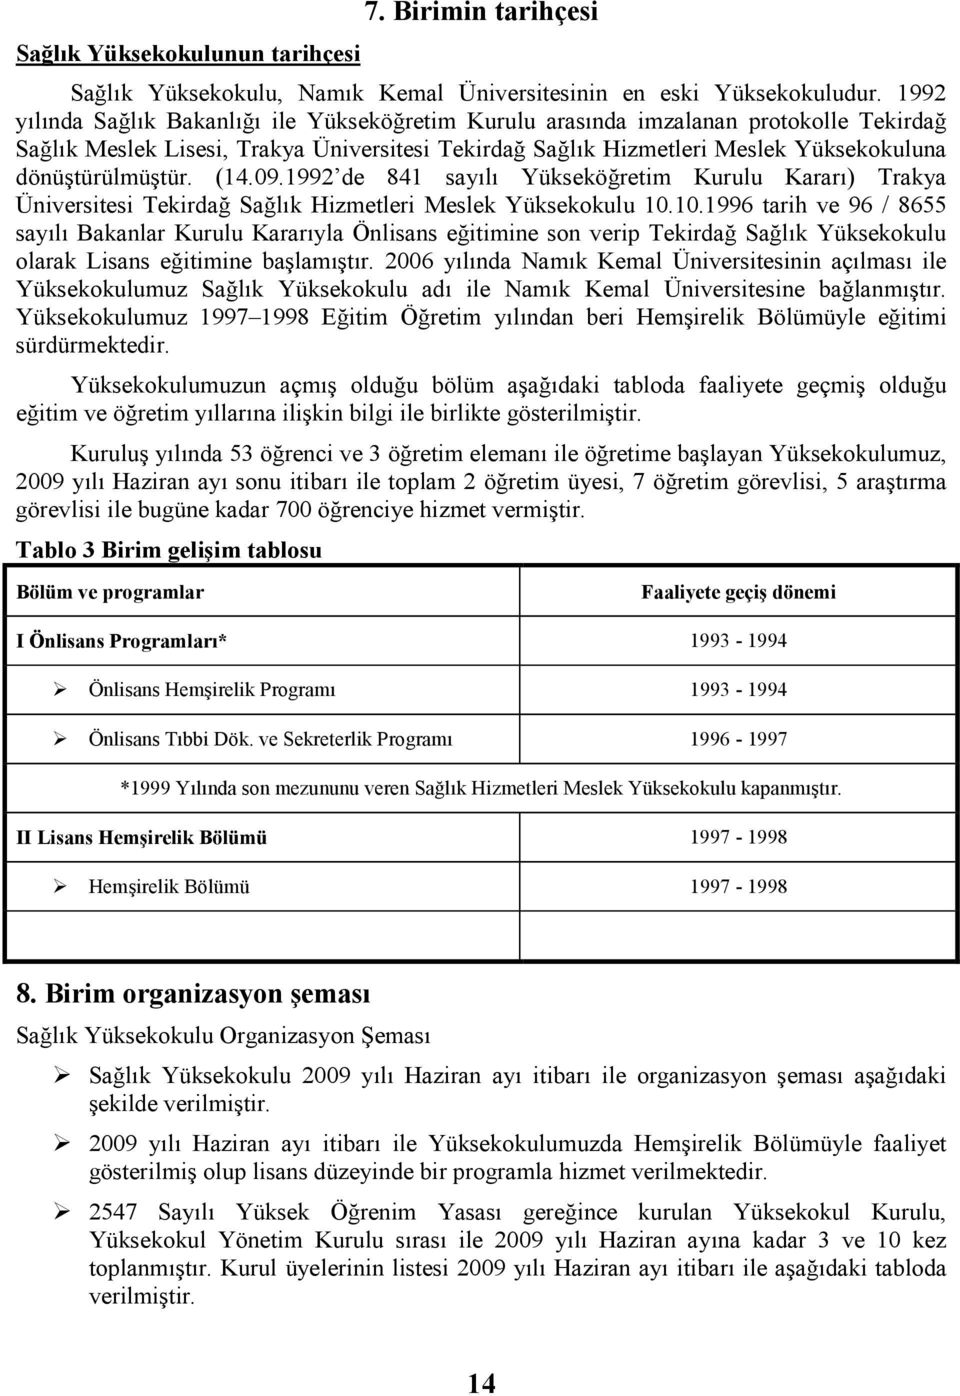 dönüştürülmüştür. (14.09.1992 de 841 sayılı Yükseköğretim Kurulu Kararı) Trakya Üniversitesi Tekirdağ Sağlık Hizmetleri Meslek Yüksekokulu 10.